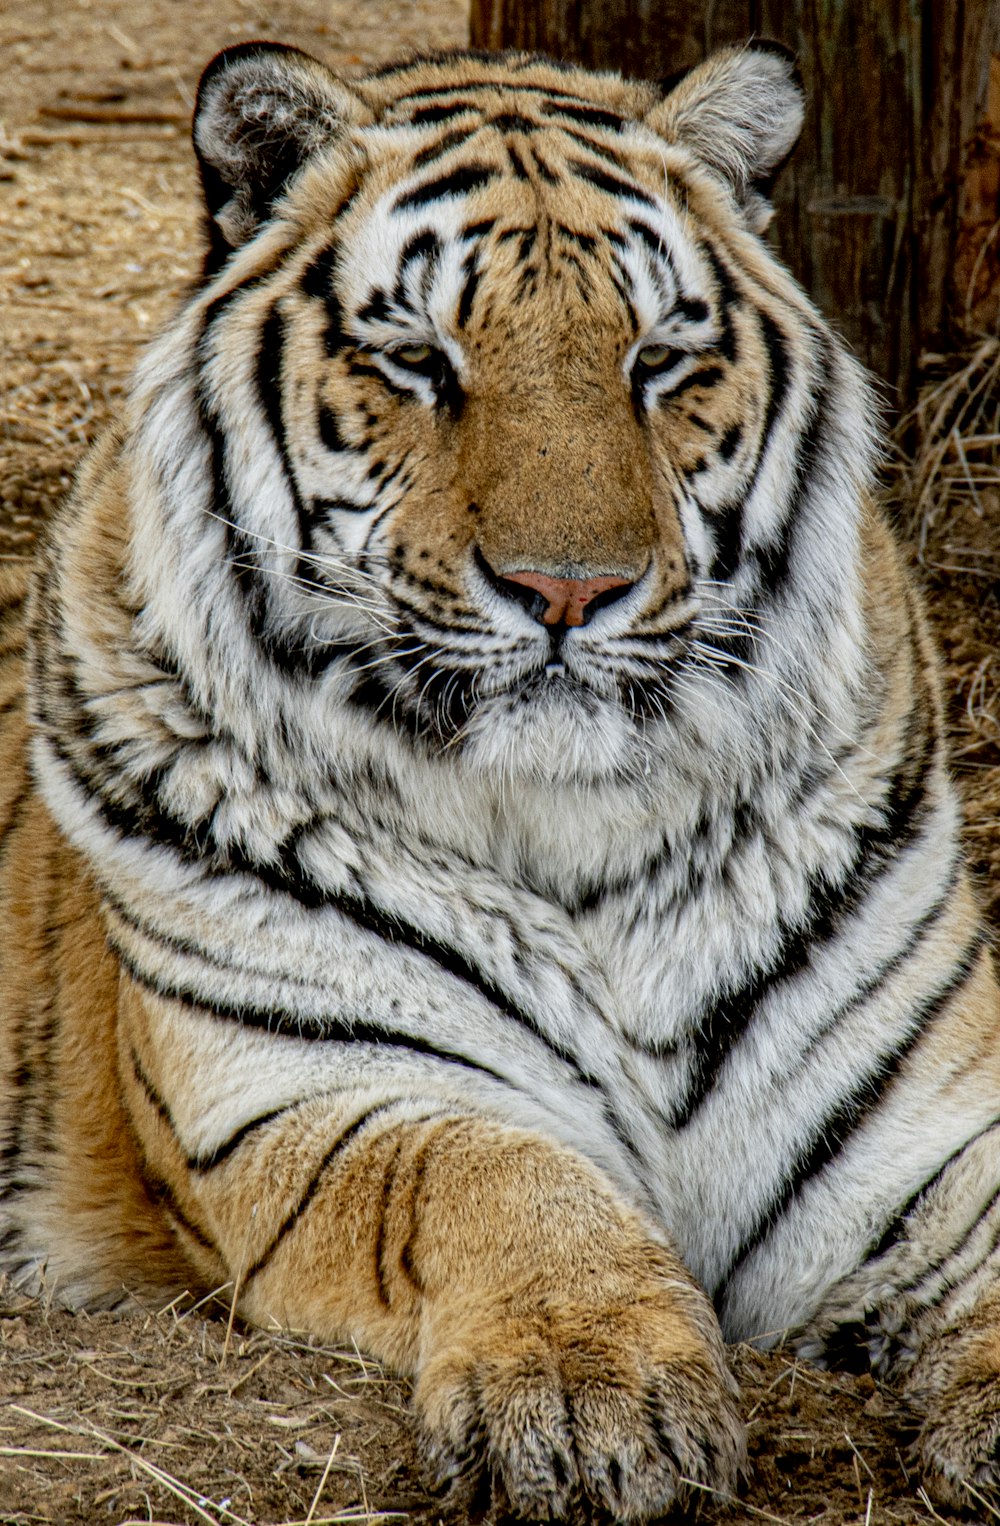 tiger lying on brown sand